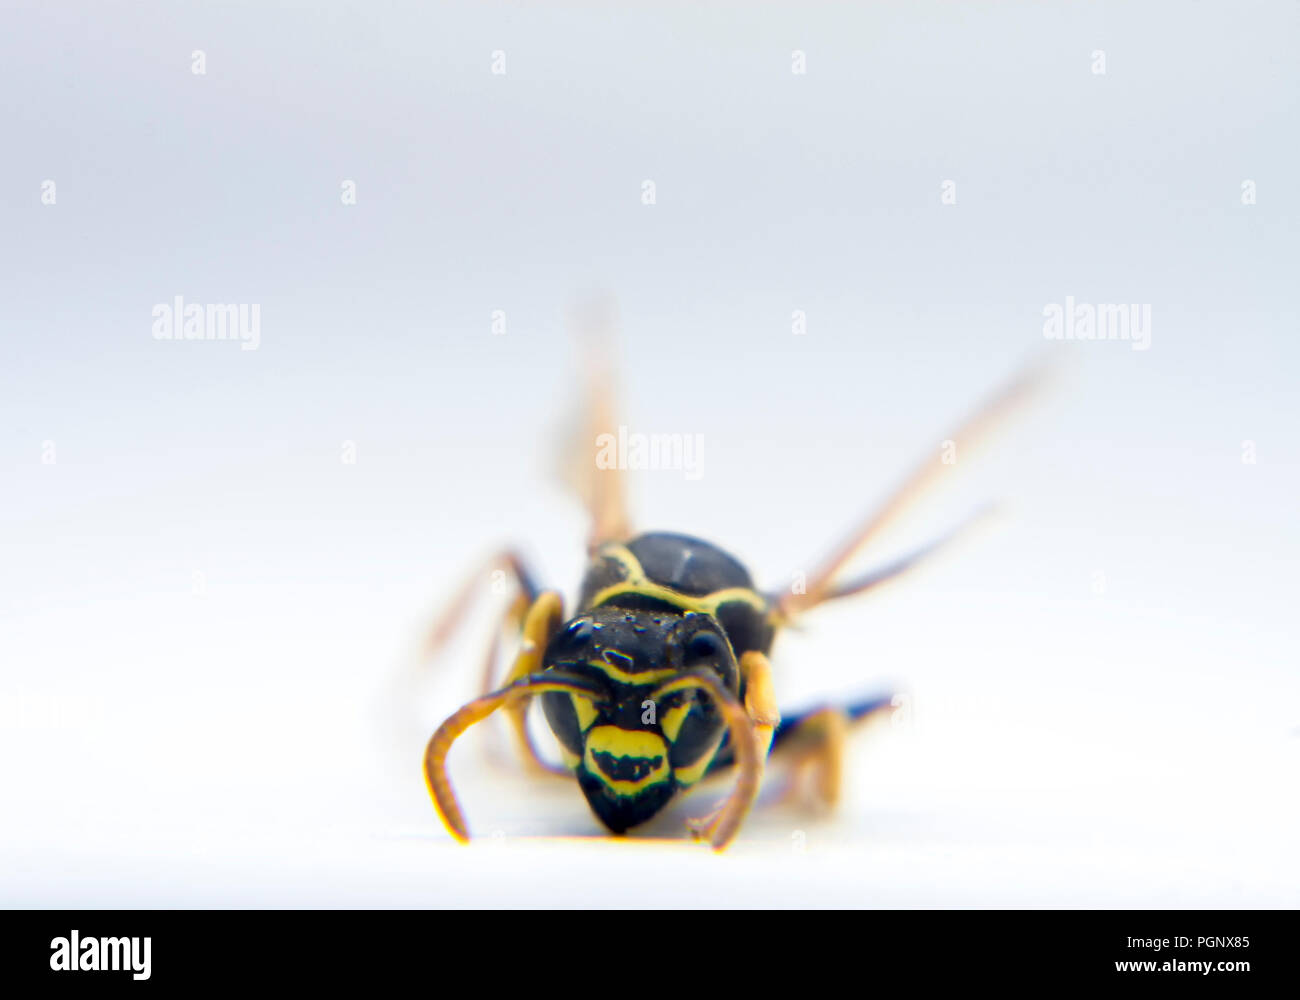 Wasp Vespidae macro photo, close-up isolated background. Stock Photo